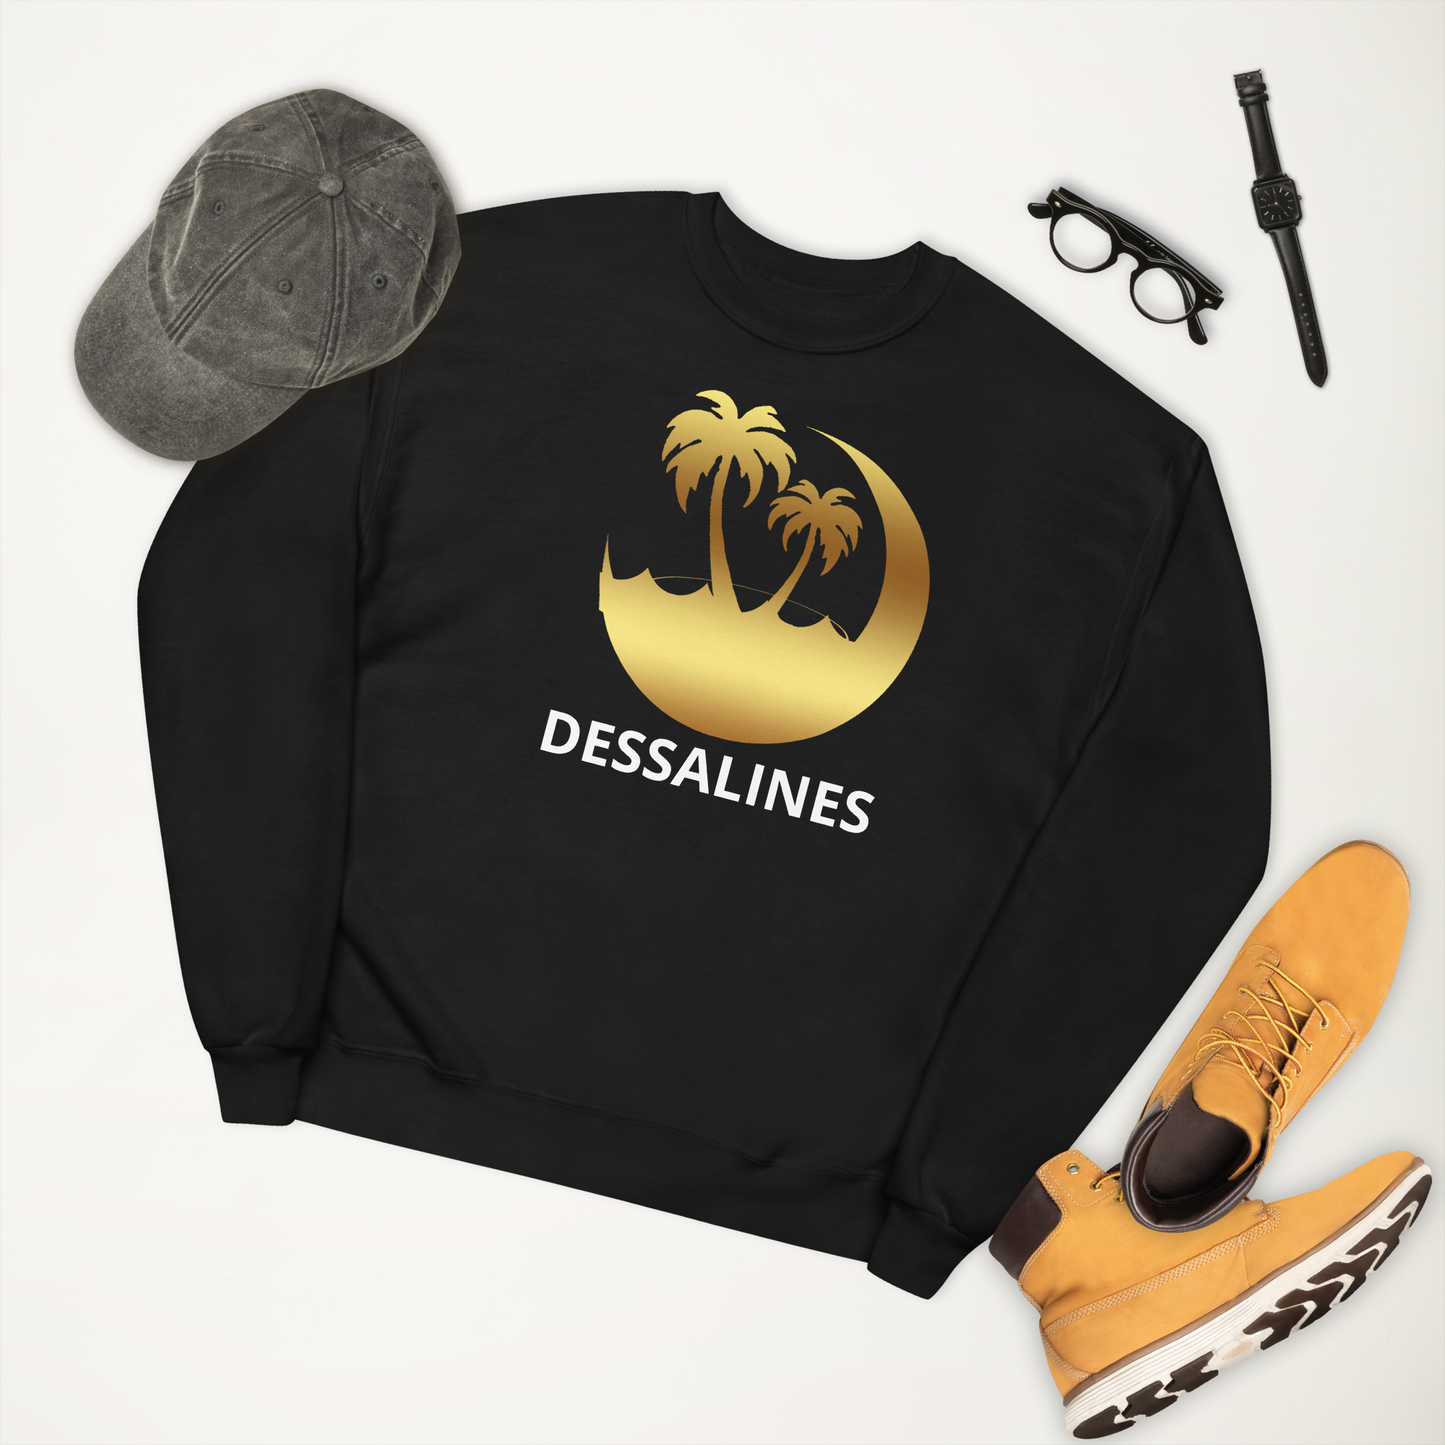 Dessaline Unisex fleece sweatshirt